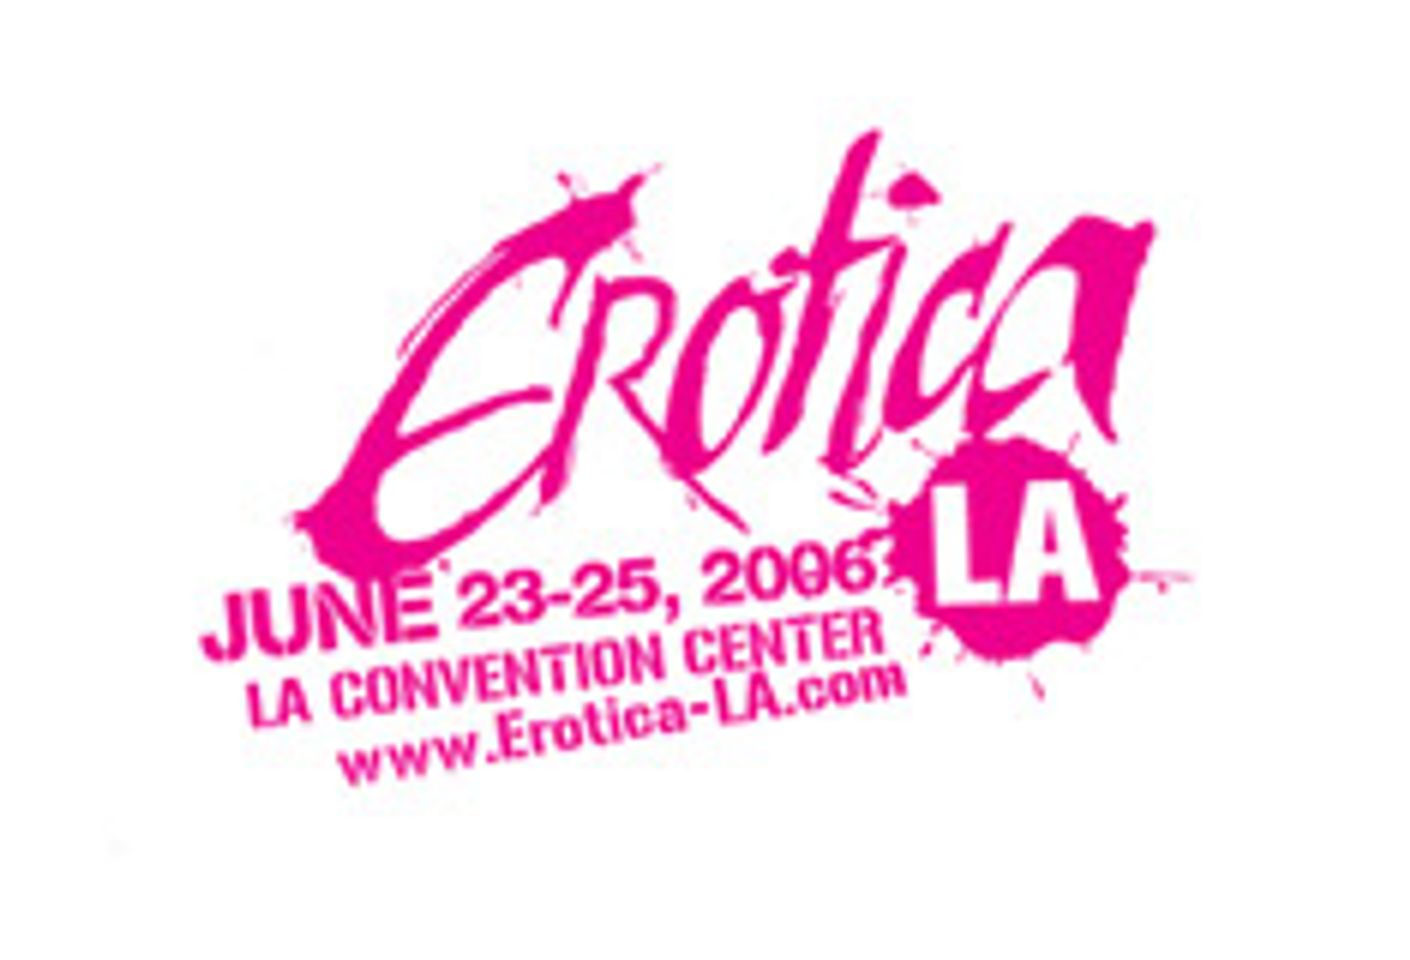 Erotica LA Projects Record Turnout